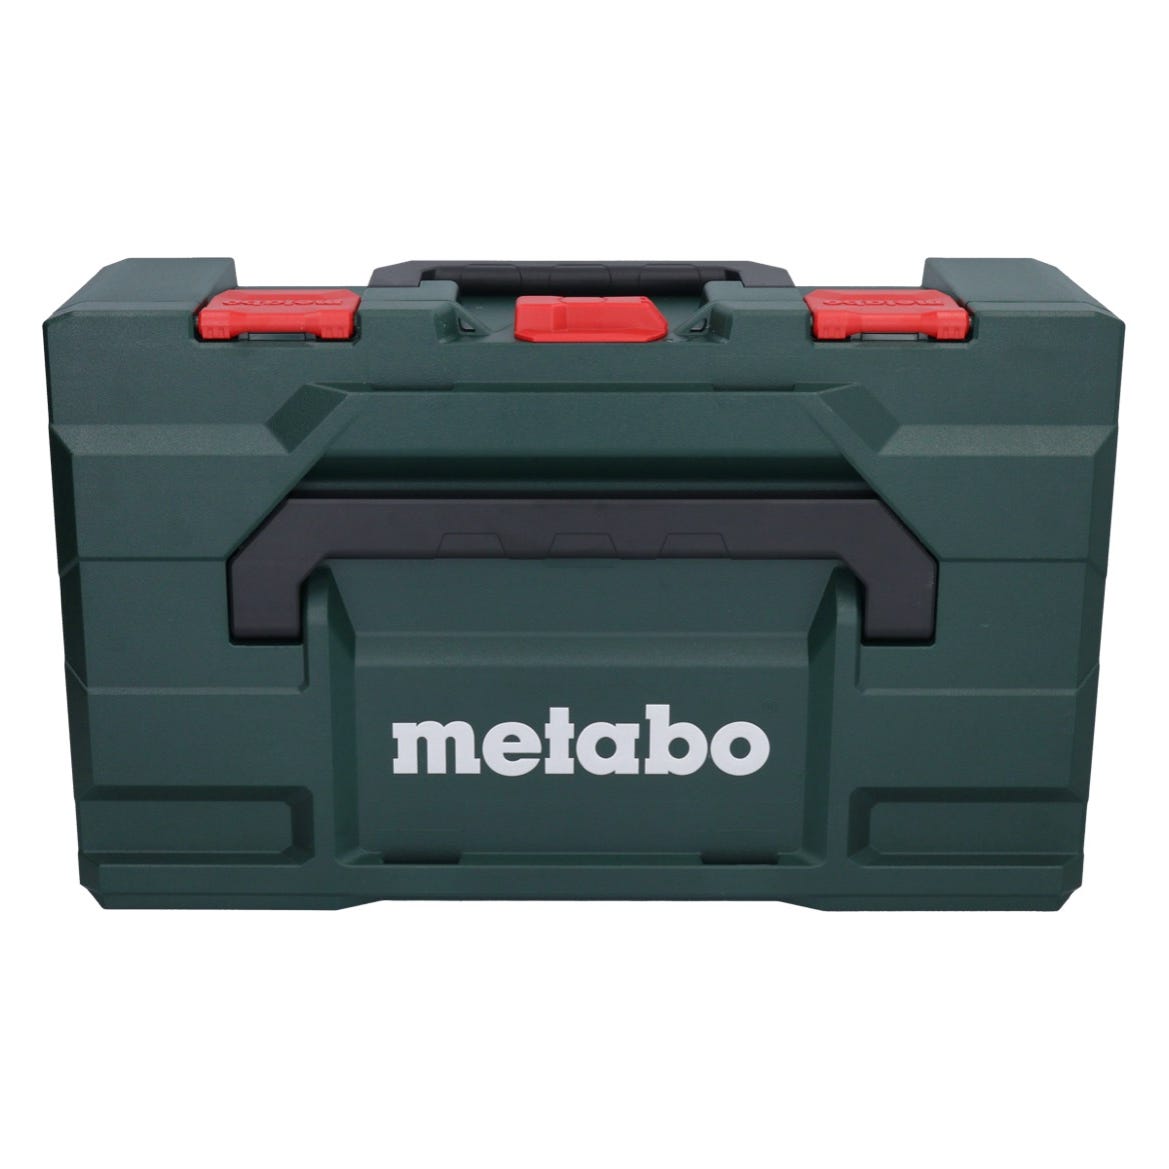 Metabo W 18 L 9-125 Meuleuse angulaire sans fil 18 V 125 mm + 1x batterie 4,0 Ah + metaBOX - sans chargeur 2